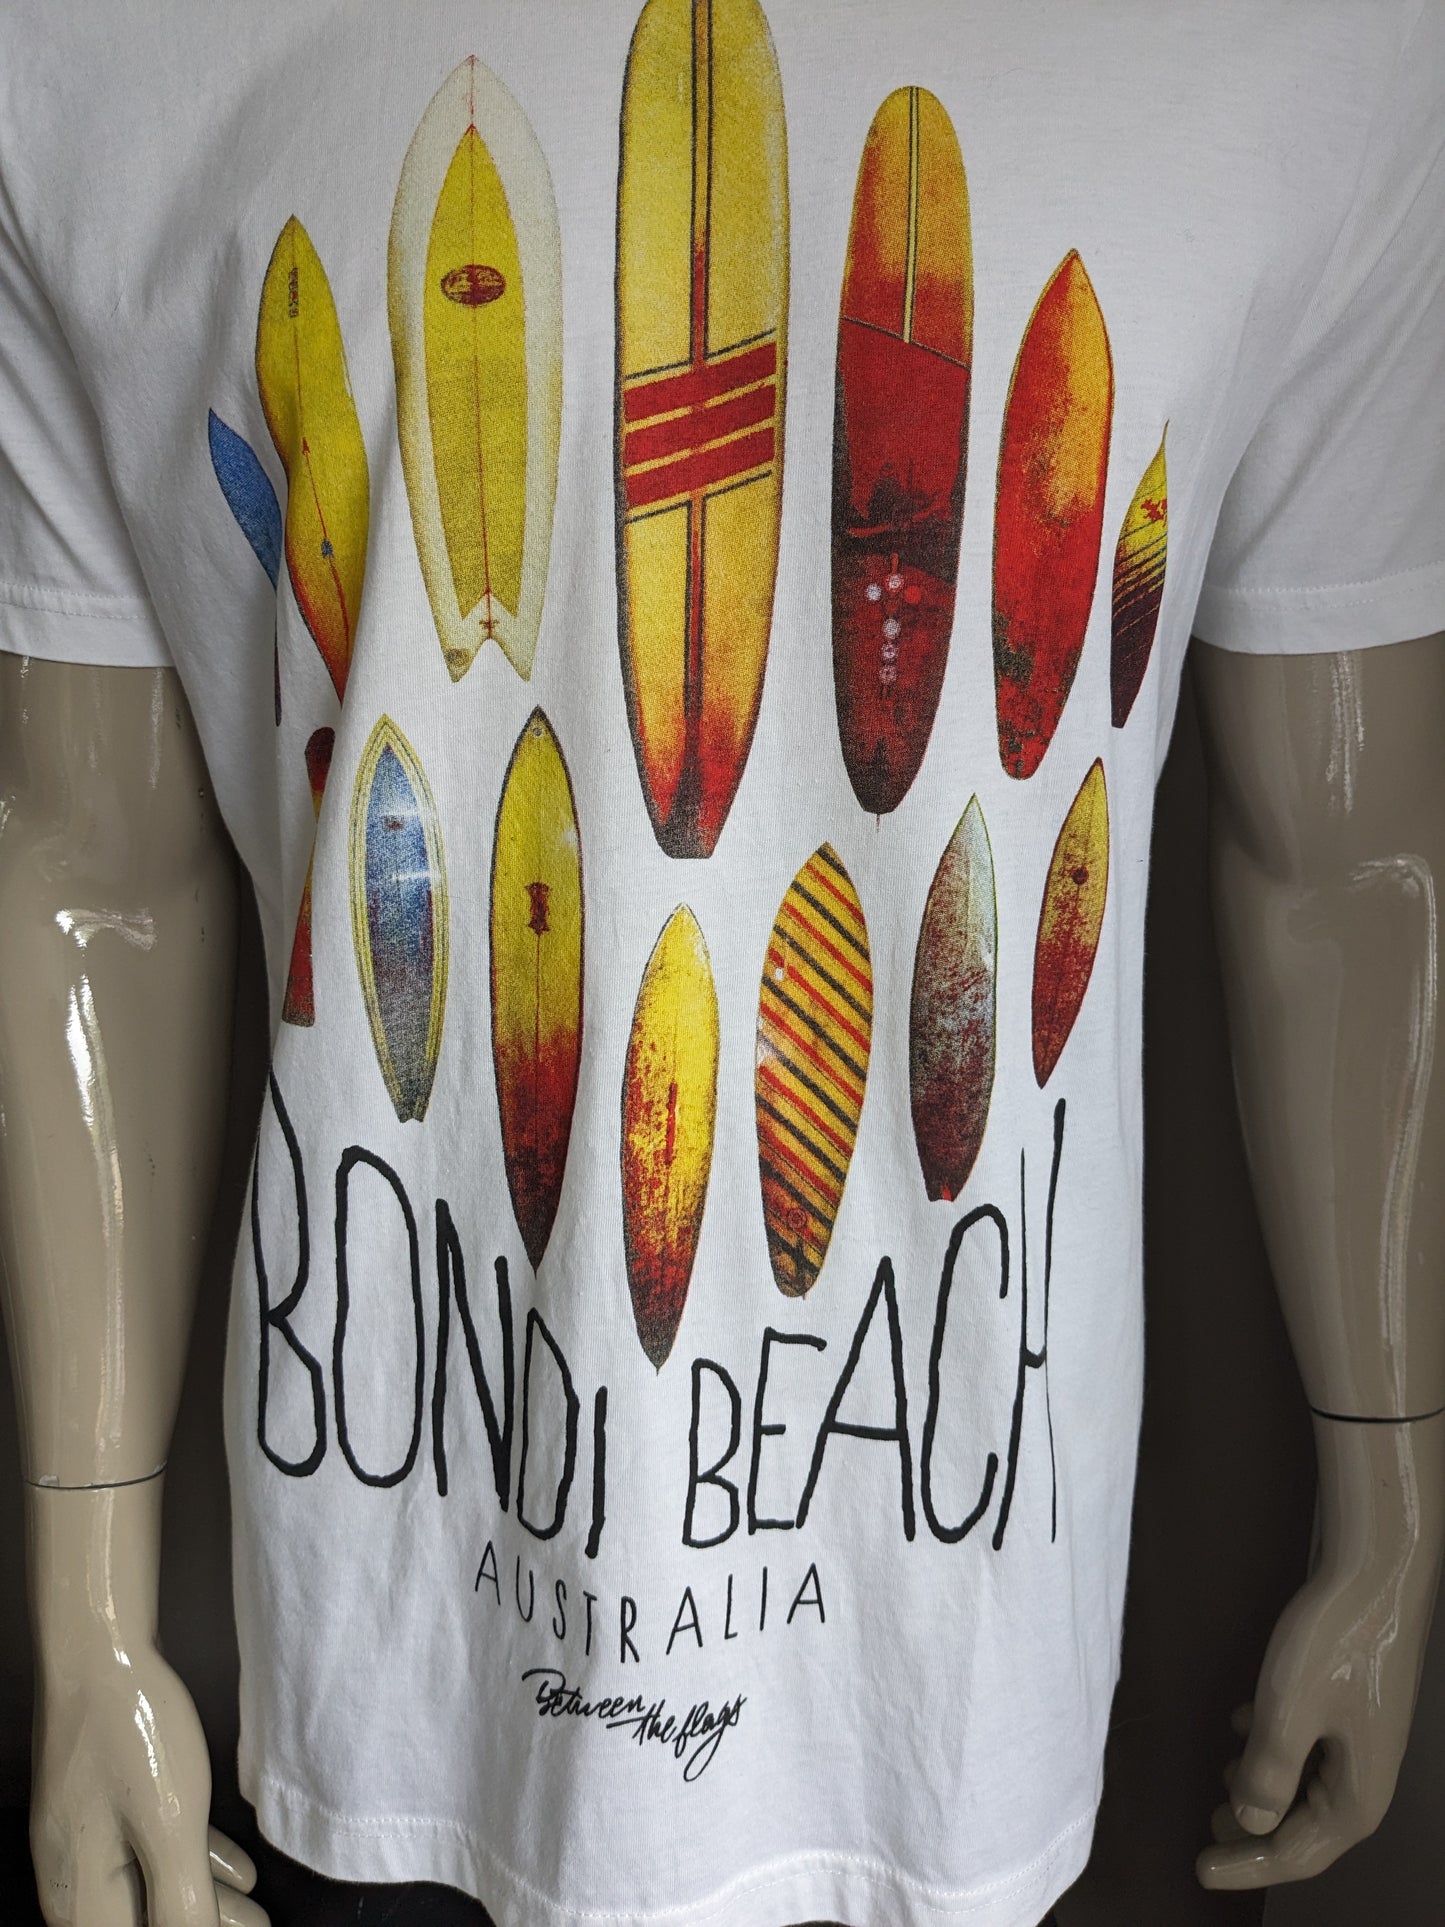 Entre la camisa "Bondi Beach" de las banderas. Blanco con impresión. Tamaño xl.